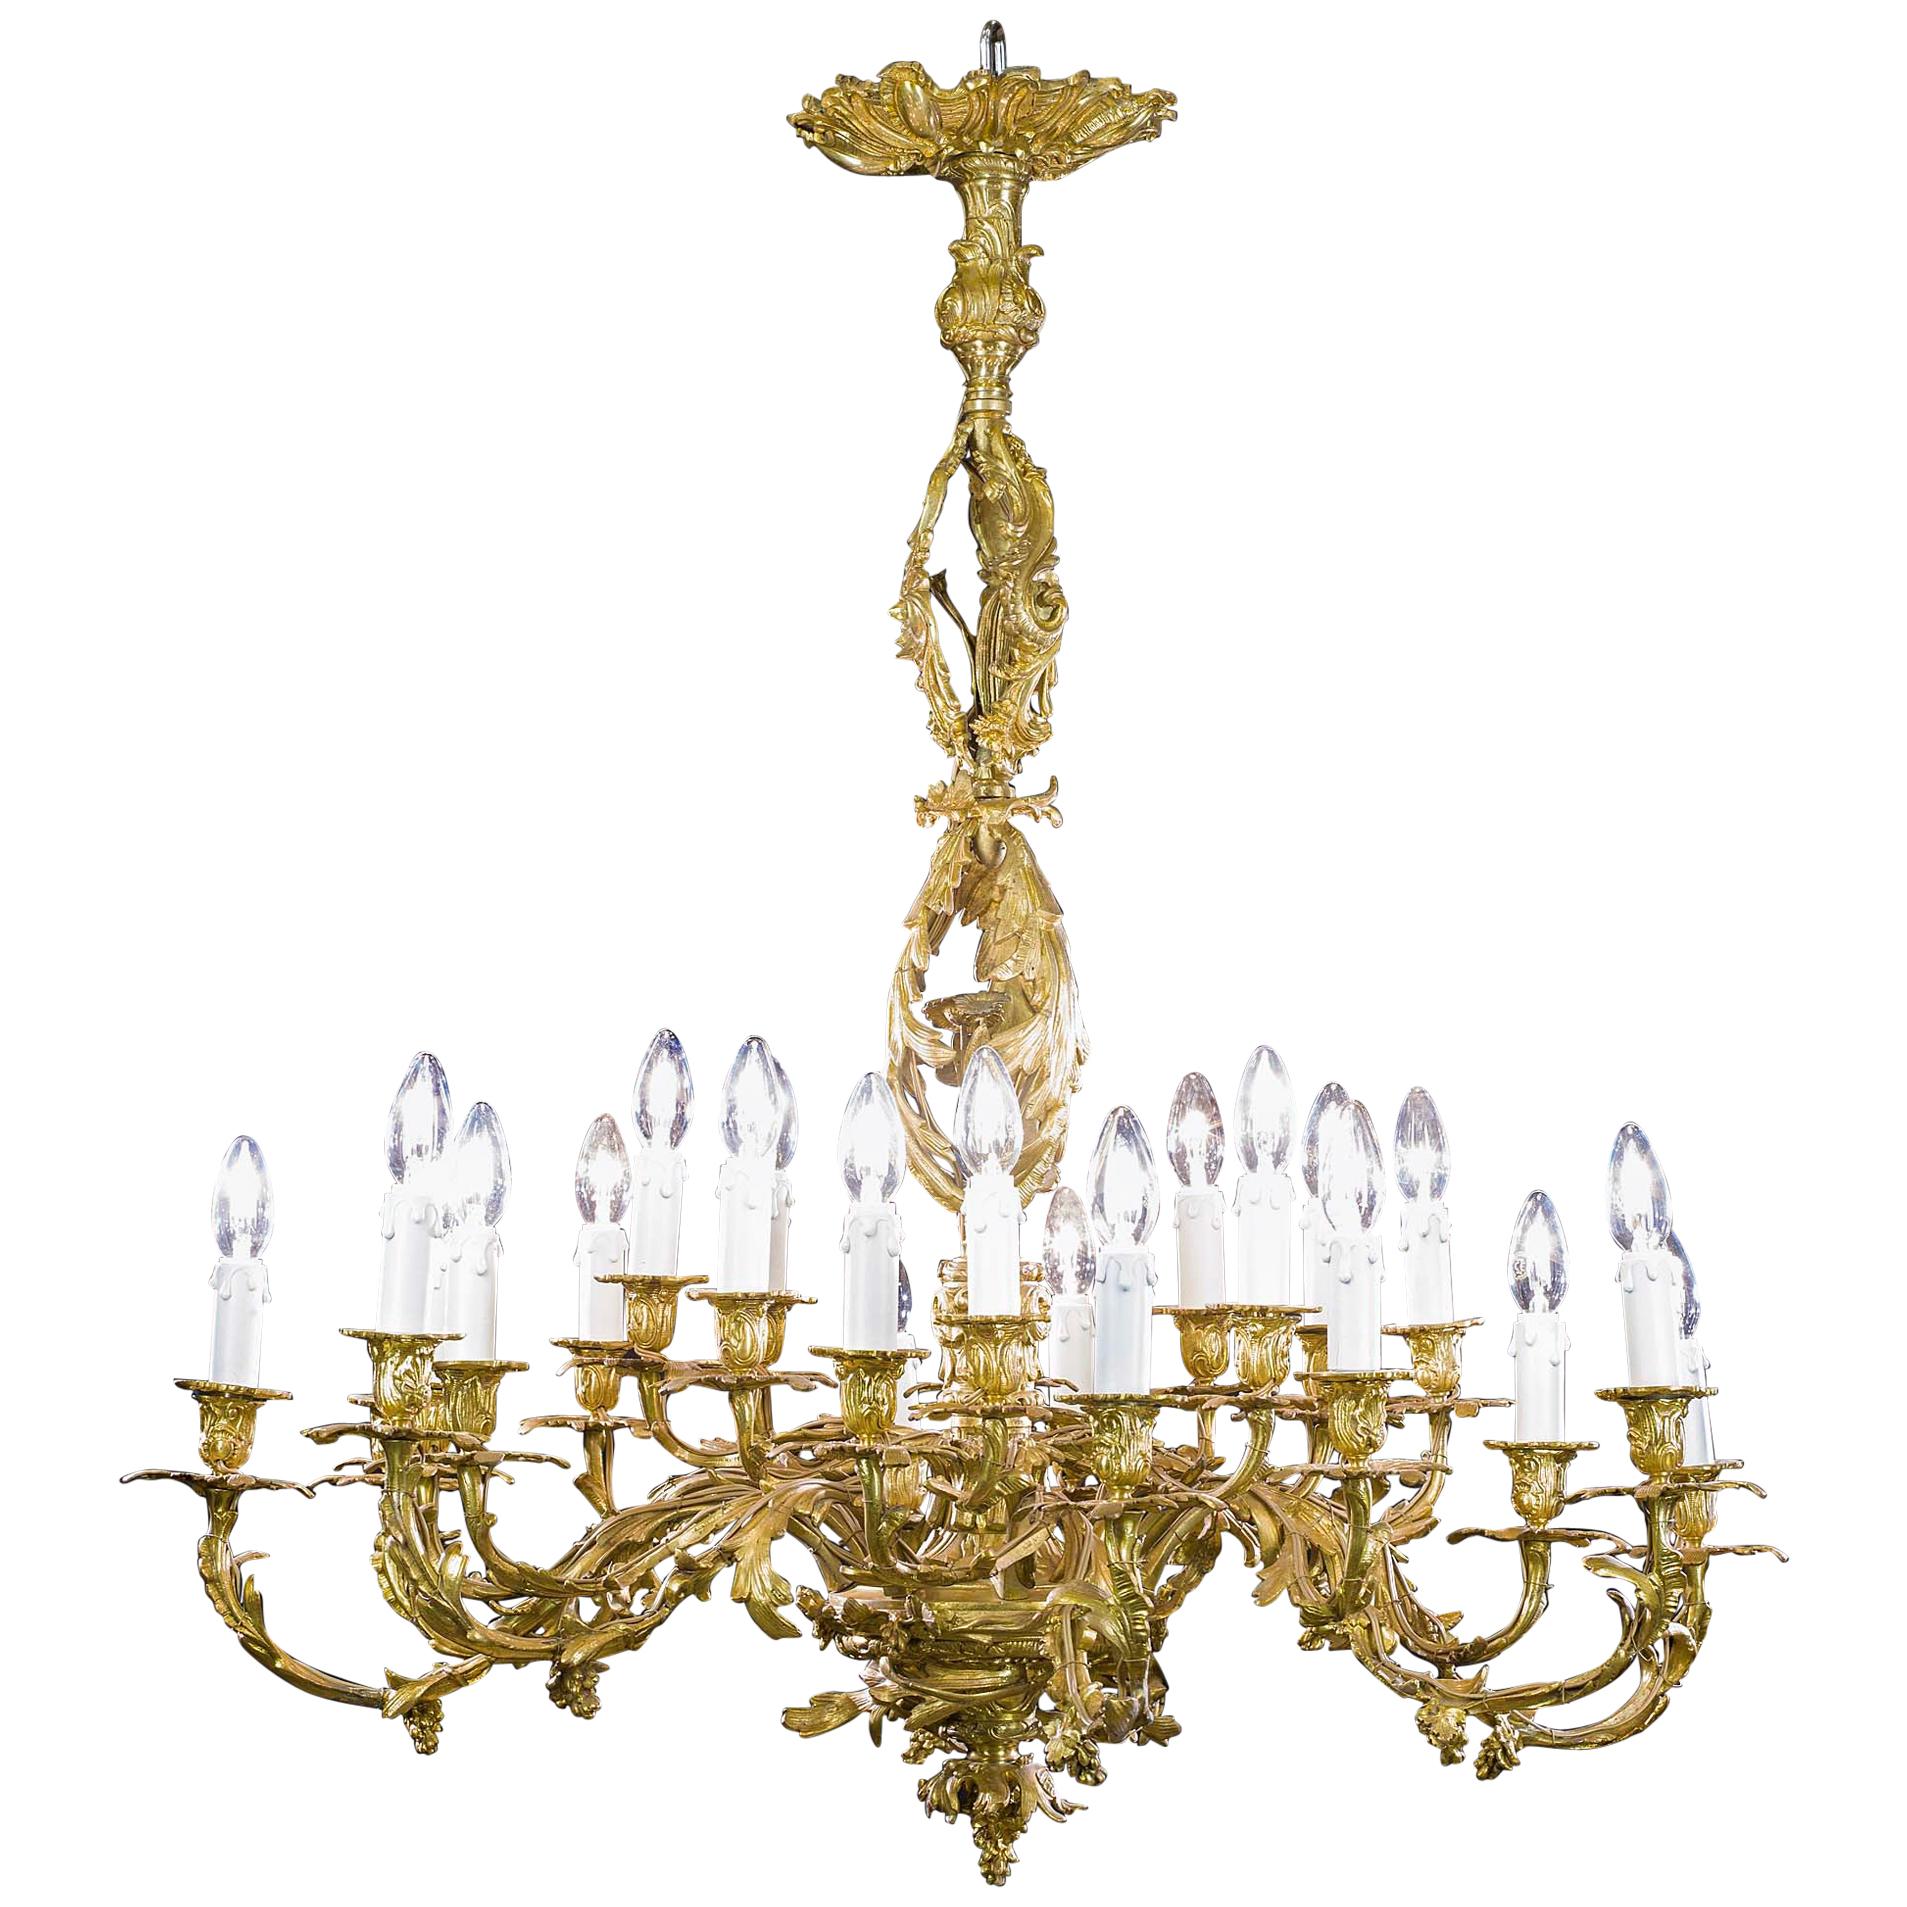 Ornate Gilt Brass Rococo Chandelier